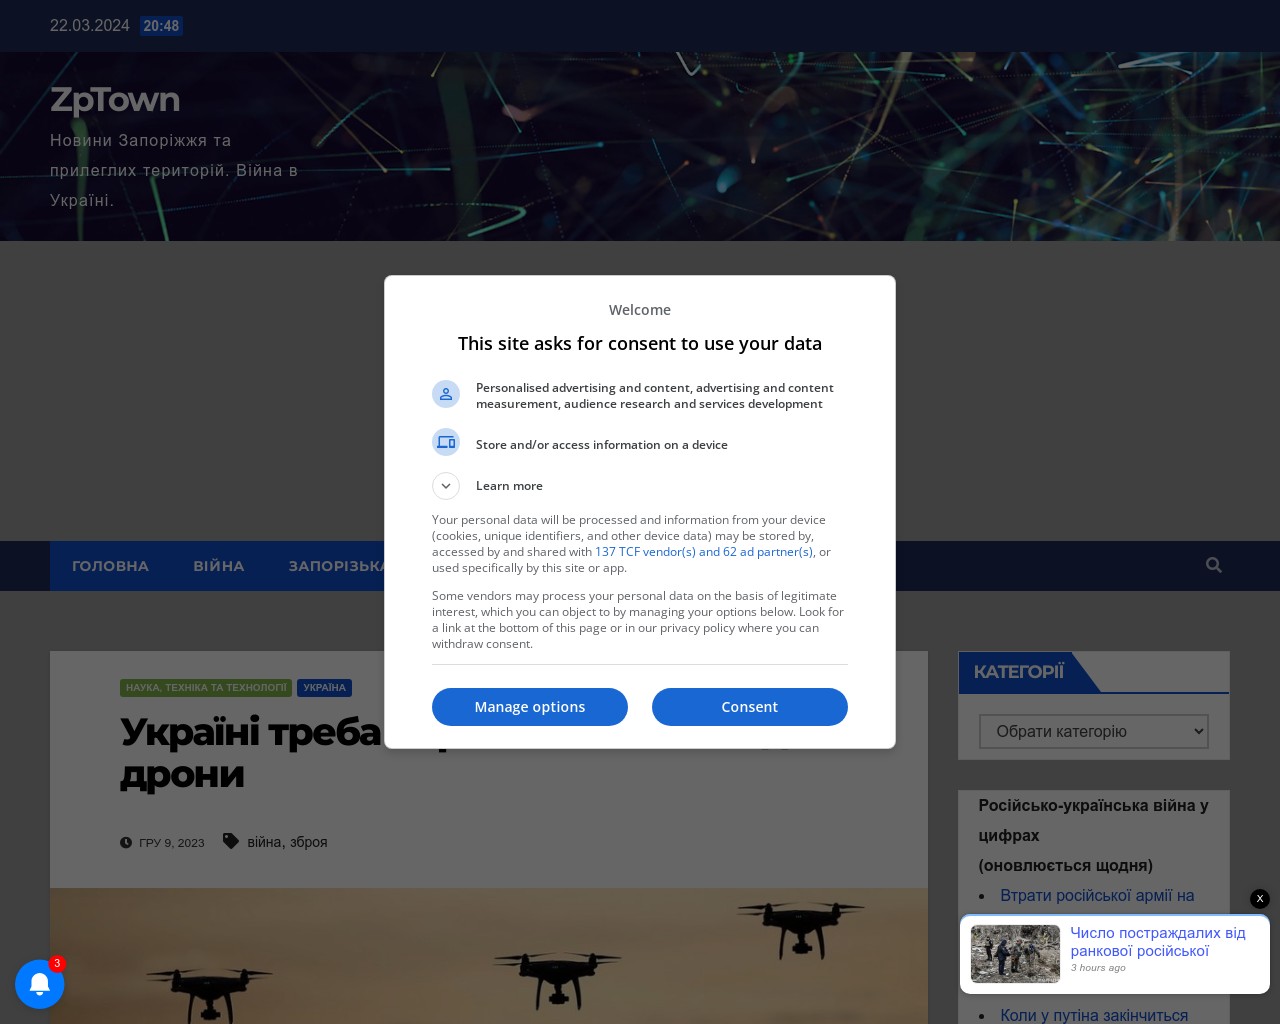 Картинка скриншота сайта - Україні треба виробляти всепогодні дрони